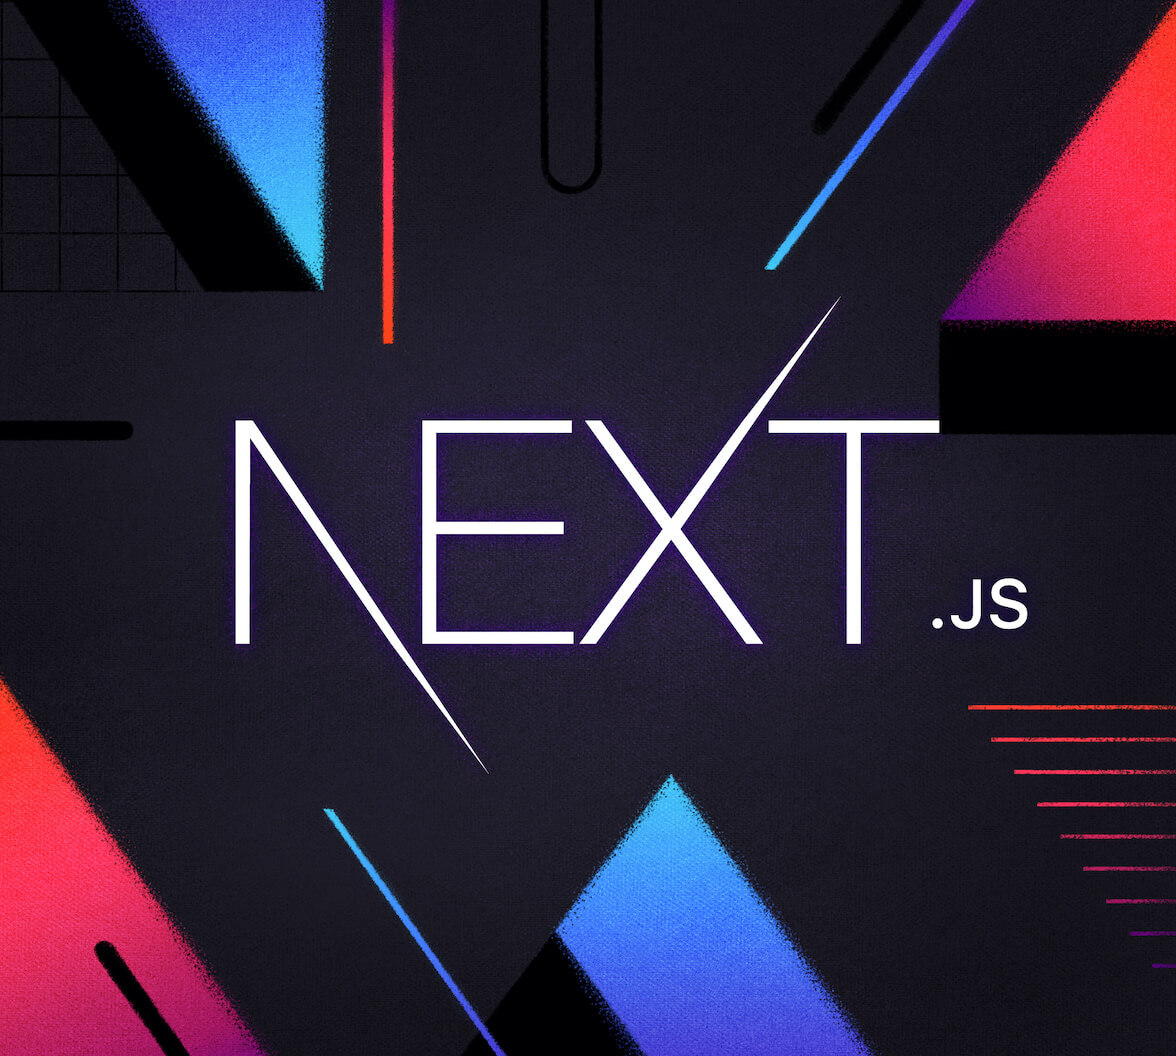 Tìm hiểu Next.js - một công cụ hữu ích cho phát triển trang web của bạn! Next.js cung cấp cho bạn các tính năng nâng cao, như tối ưu hóa SEO, truy cập đến dữ liệu tĩnh và tích hợp với React. Và hơn nữa, trang web của bạn sẽ chạy nhanh hơn và tốt hơn. Nhấp vào hình ảnh để tìm hiểu thêm về Next.js.